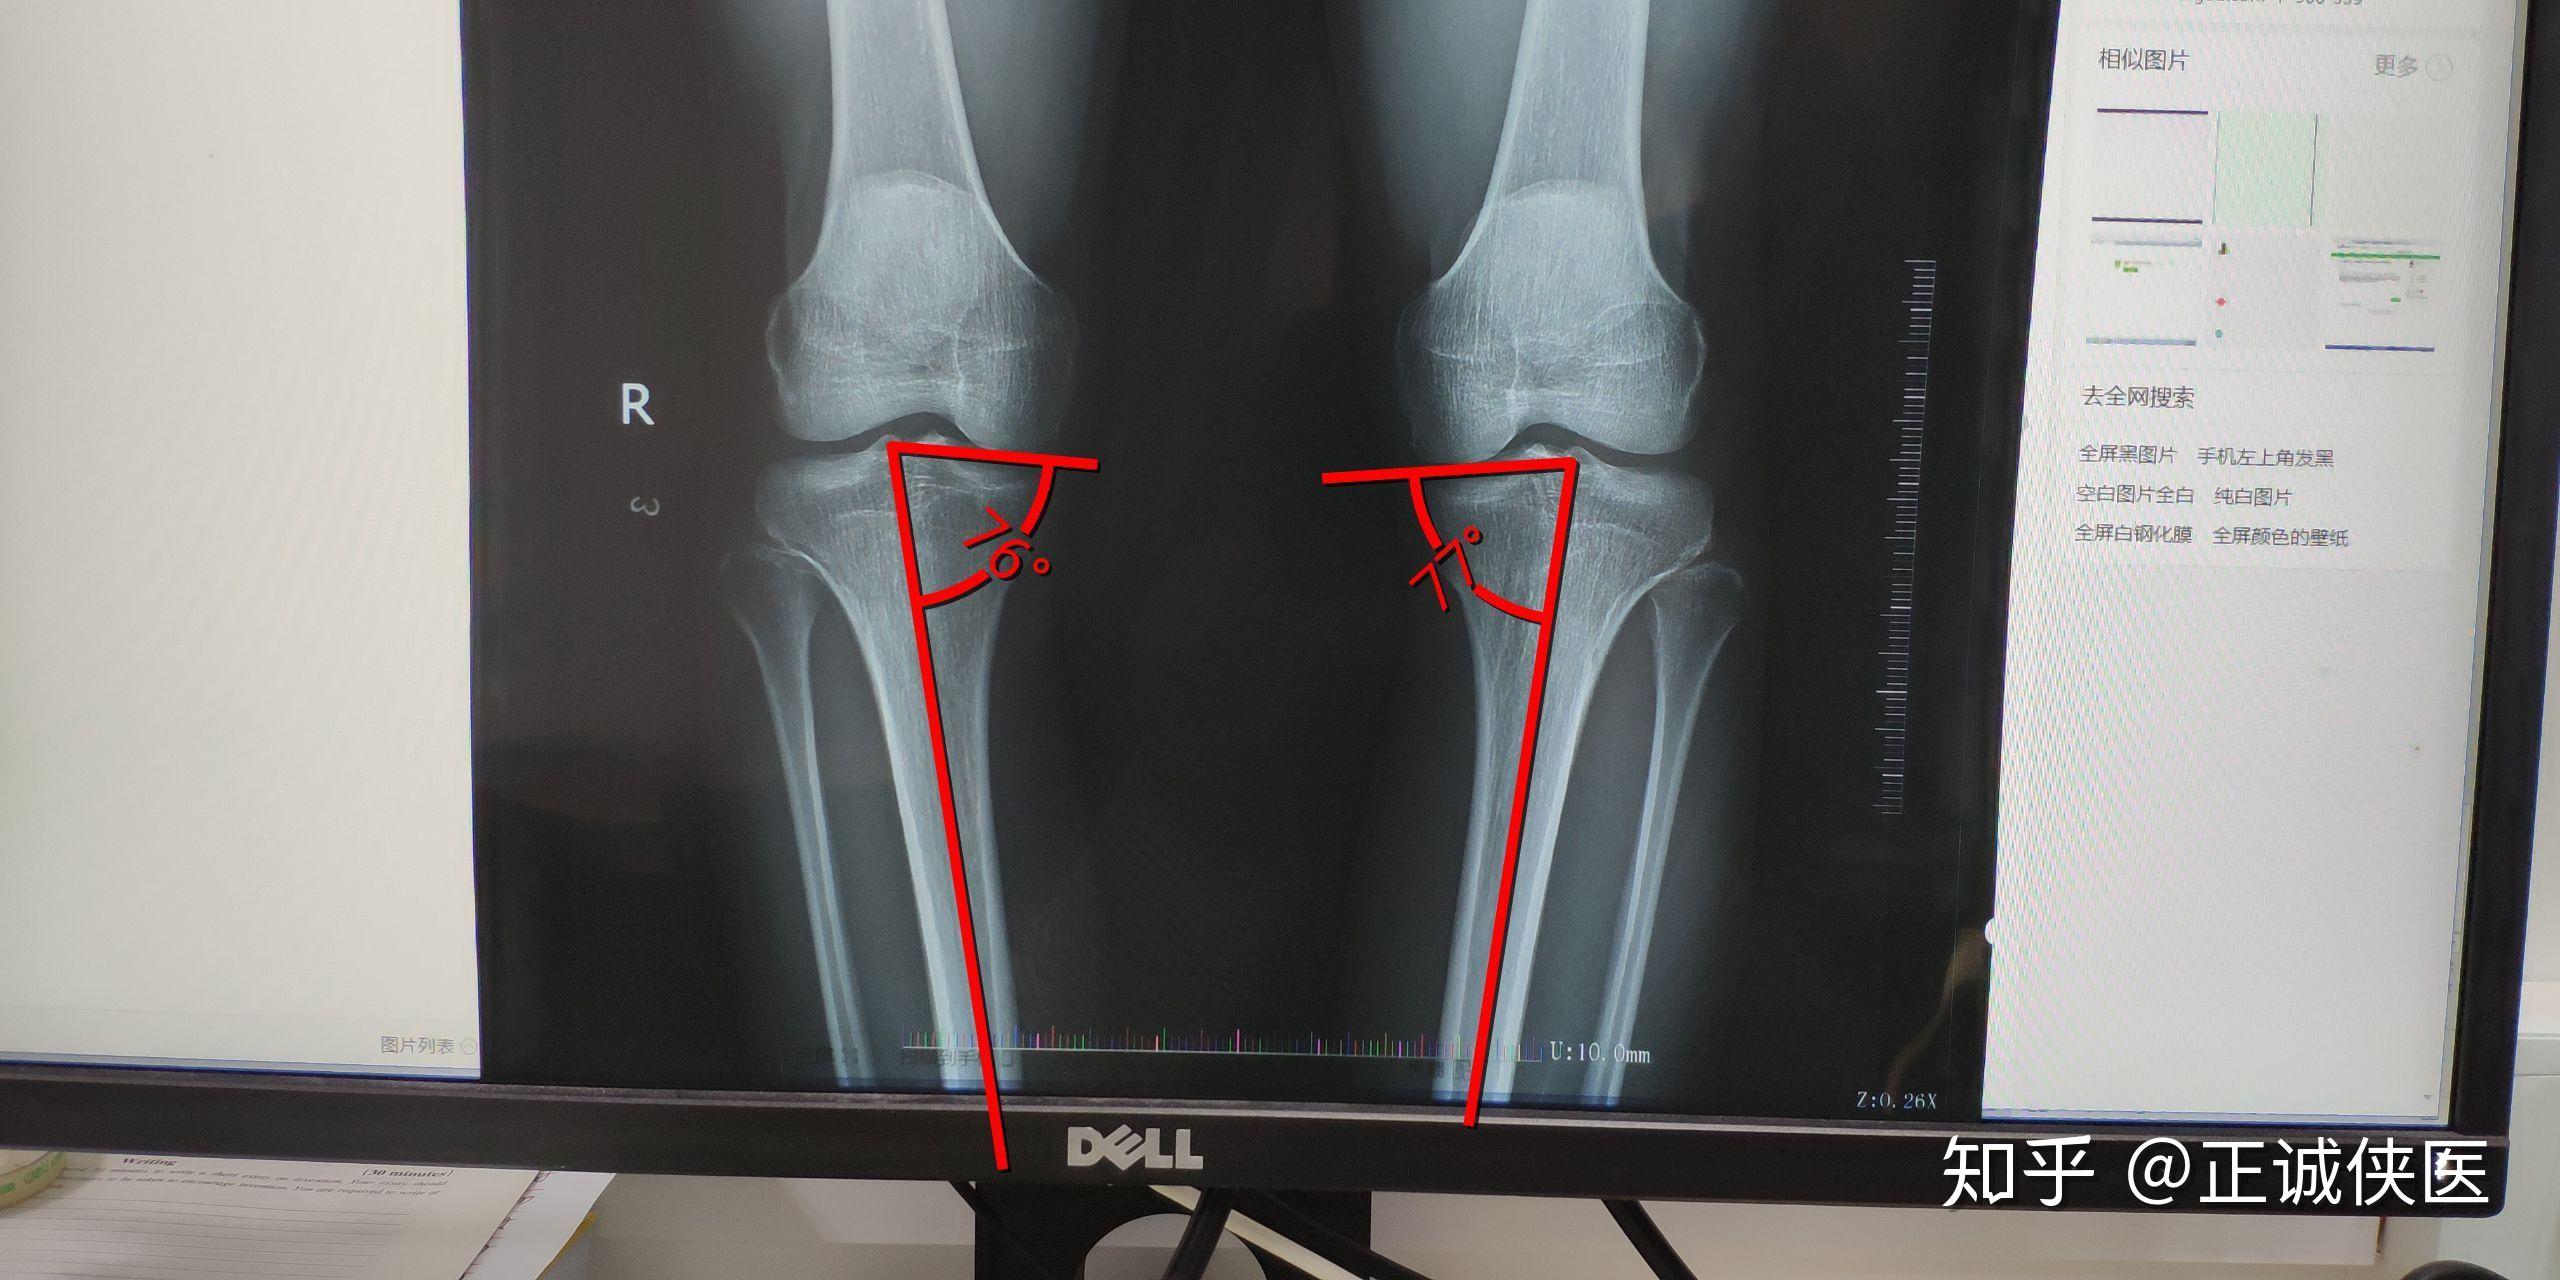 请问一下从x光片上看我的o型腿是关节畸形导致的还是肌肉力量问题啊